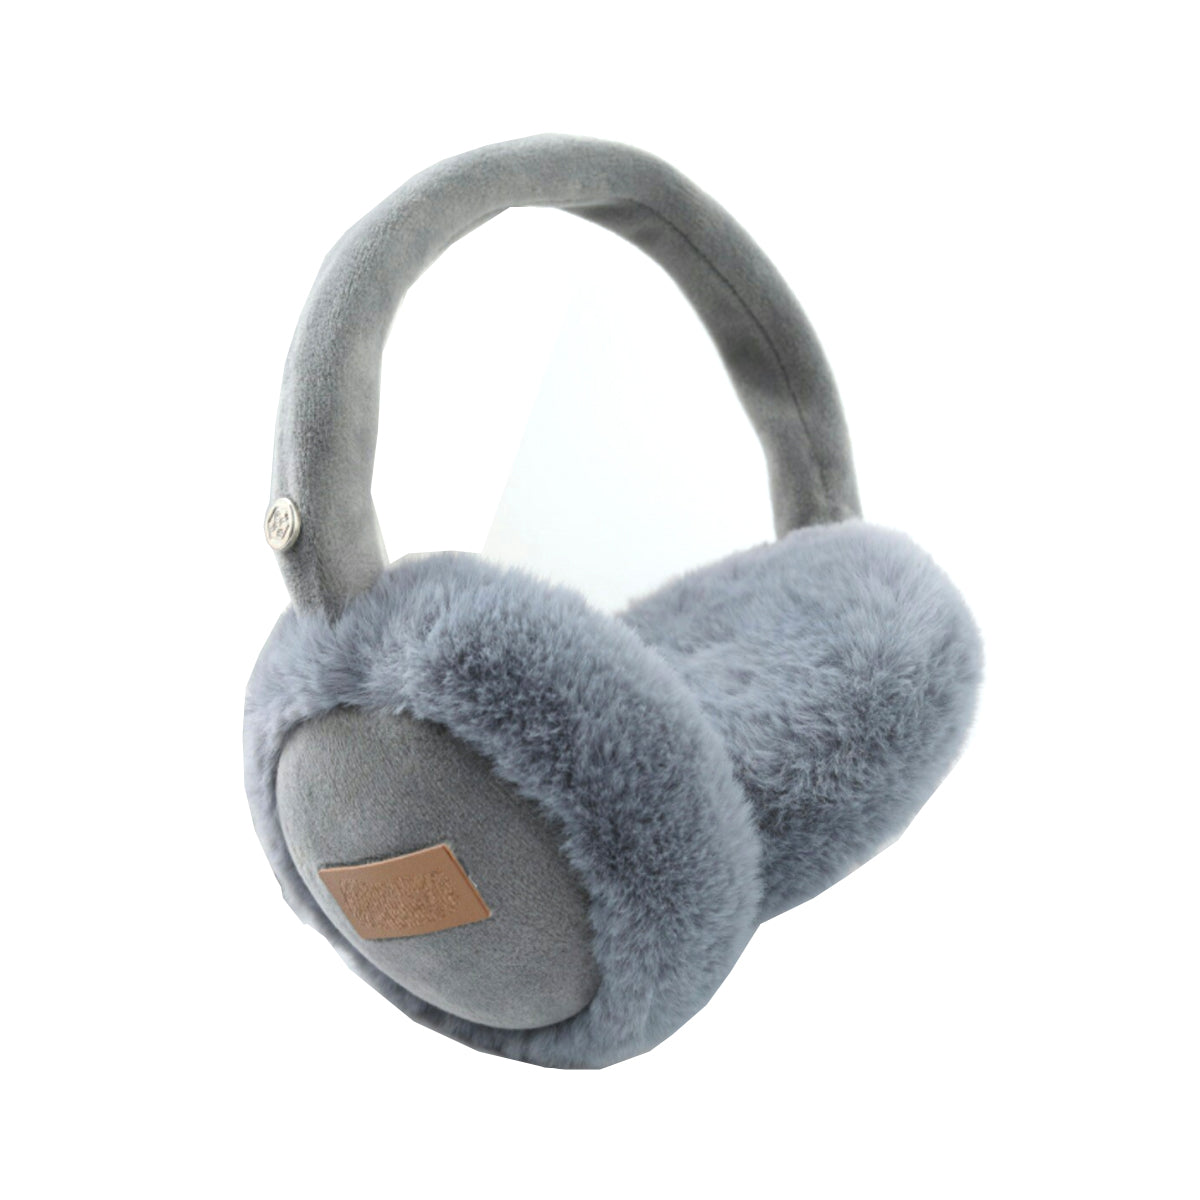 Fuzzy Wuzzy Bluetooth Headphones